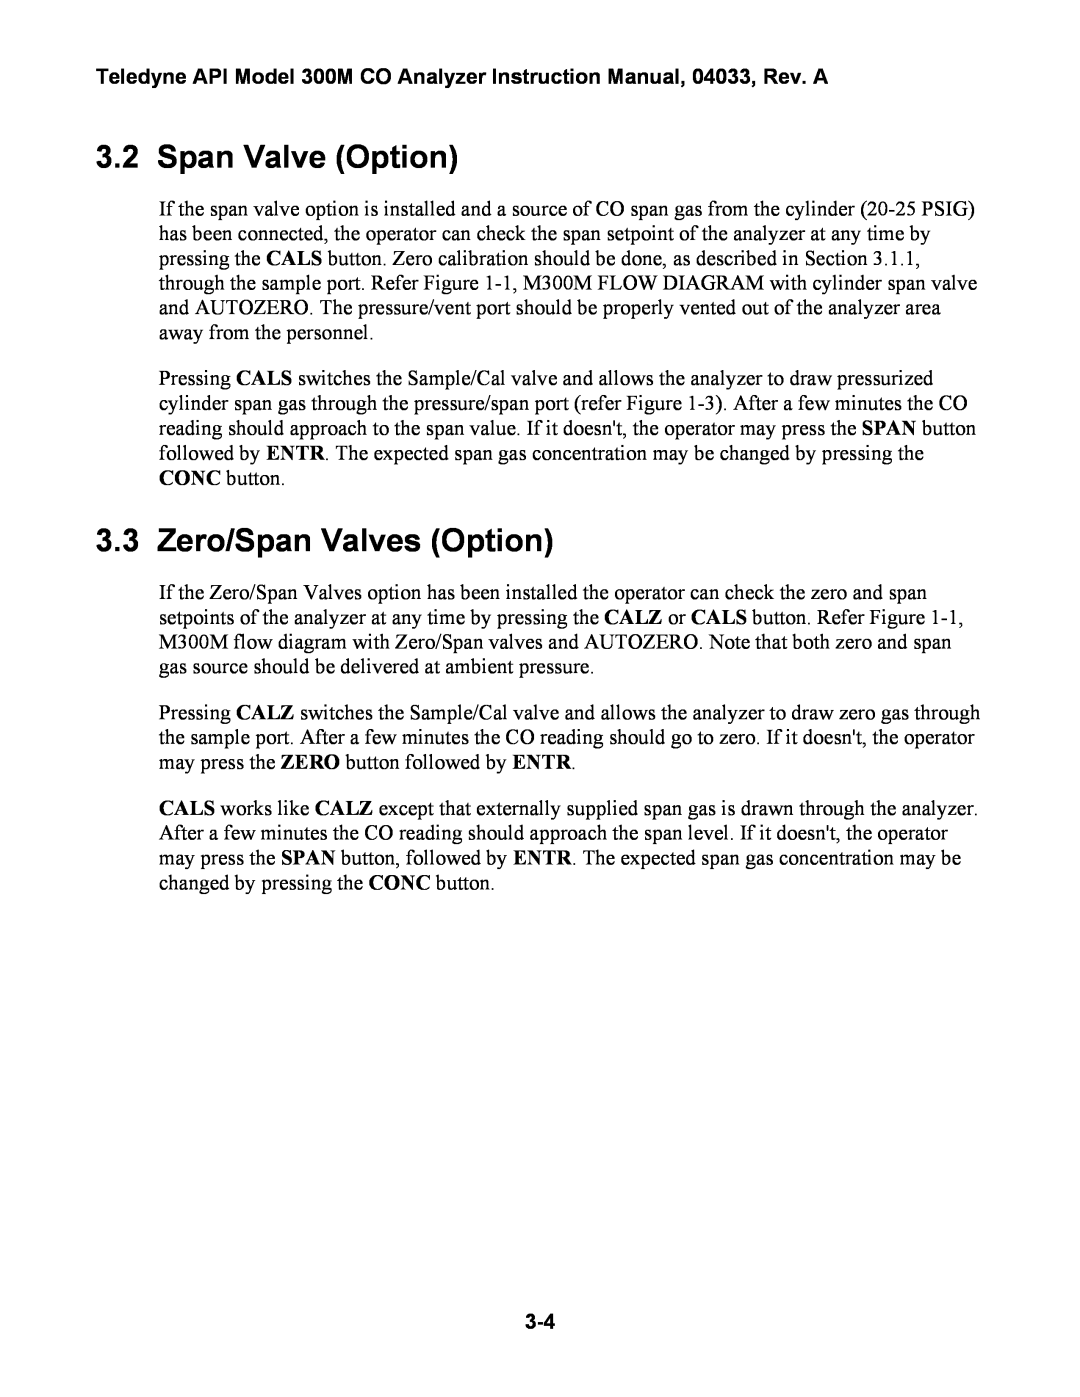 Teledyne 300M instruction manual Span Valve Option, Zero/Span Valves Option 